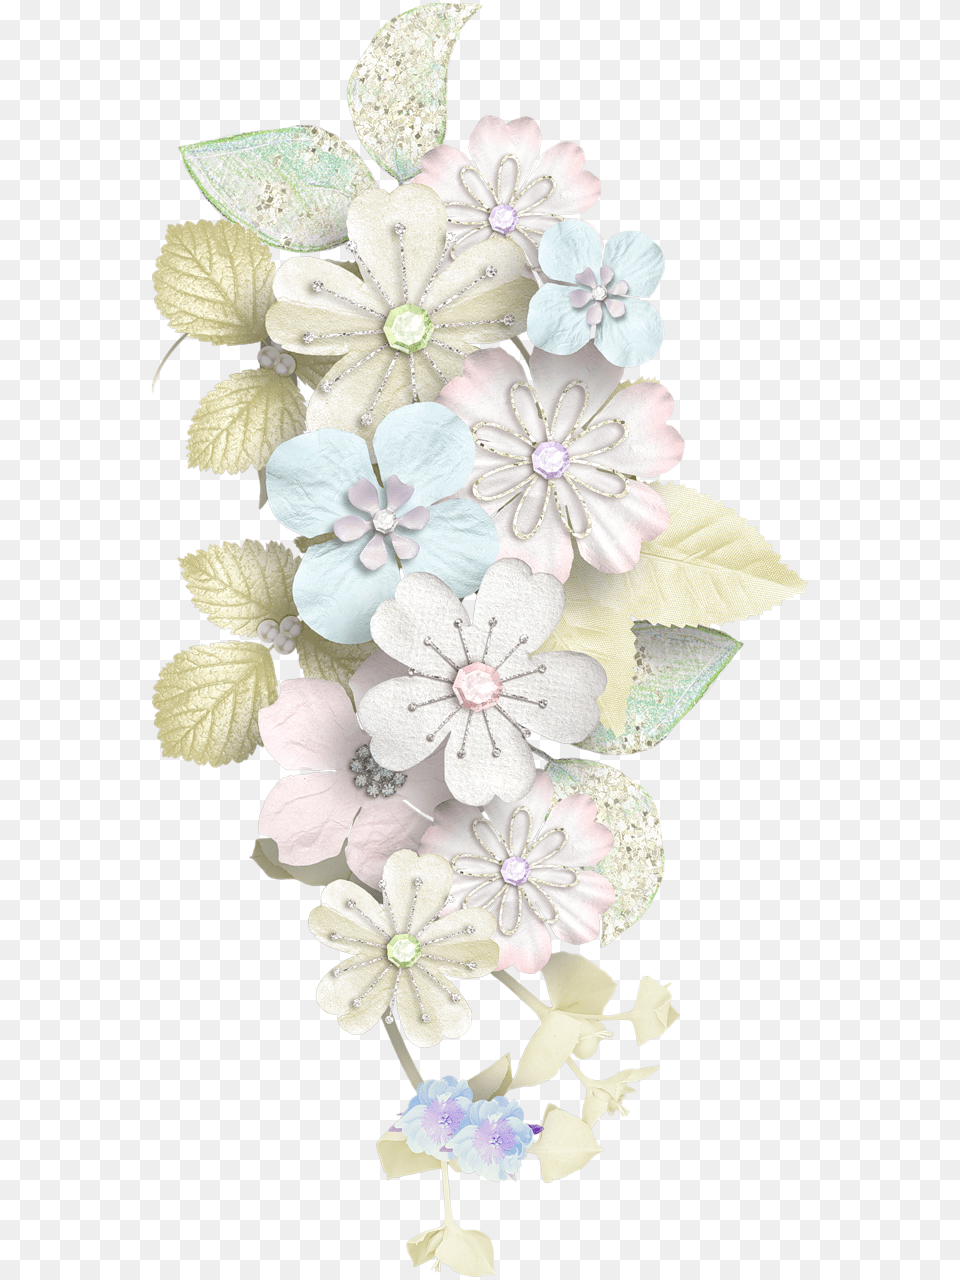 Watercolor Flower Wreath, Plant, Pattern, Accessories, Flower Arrangement Free Transparent Png